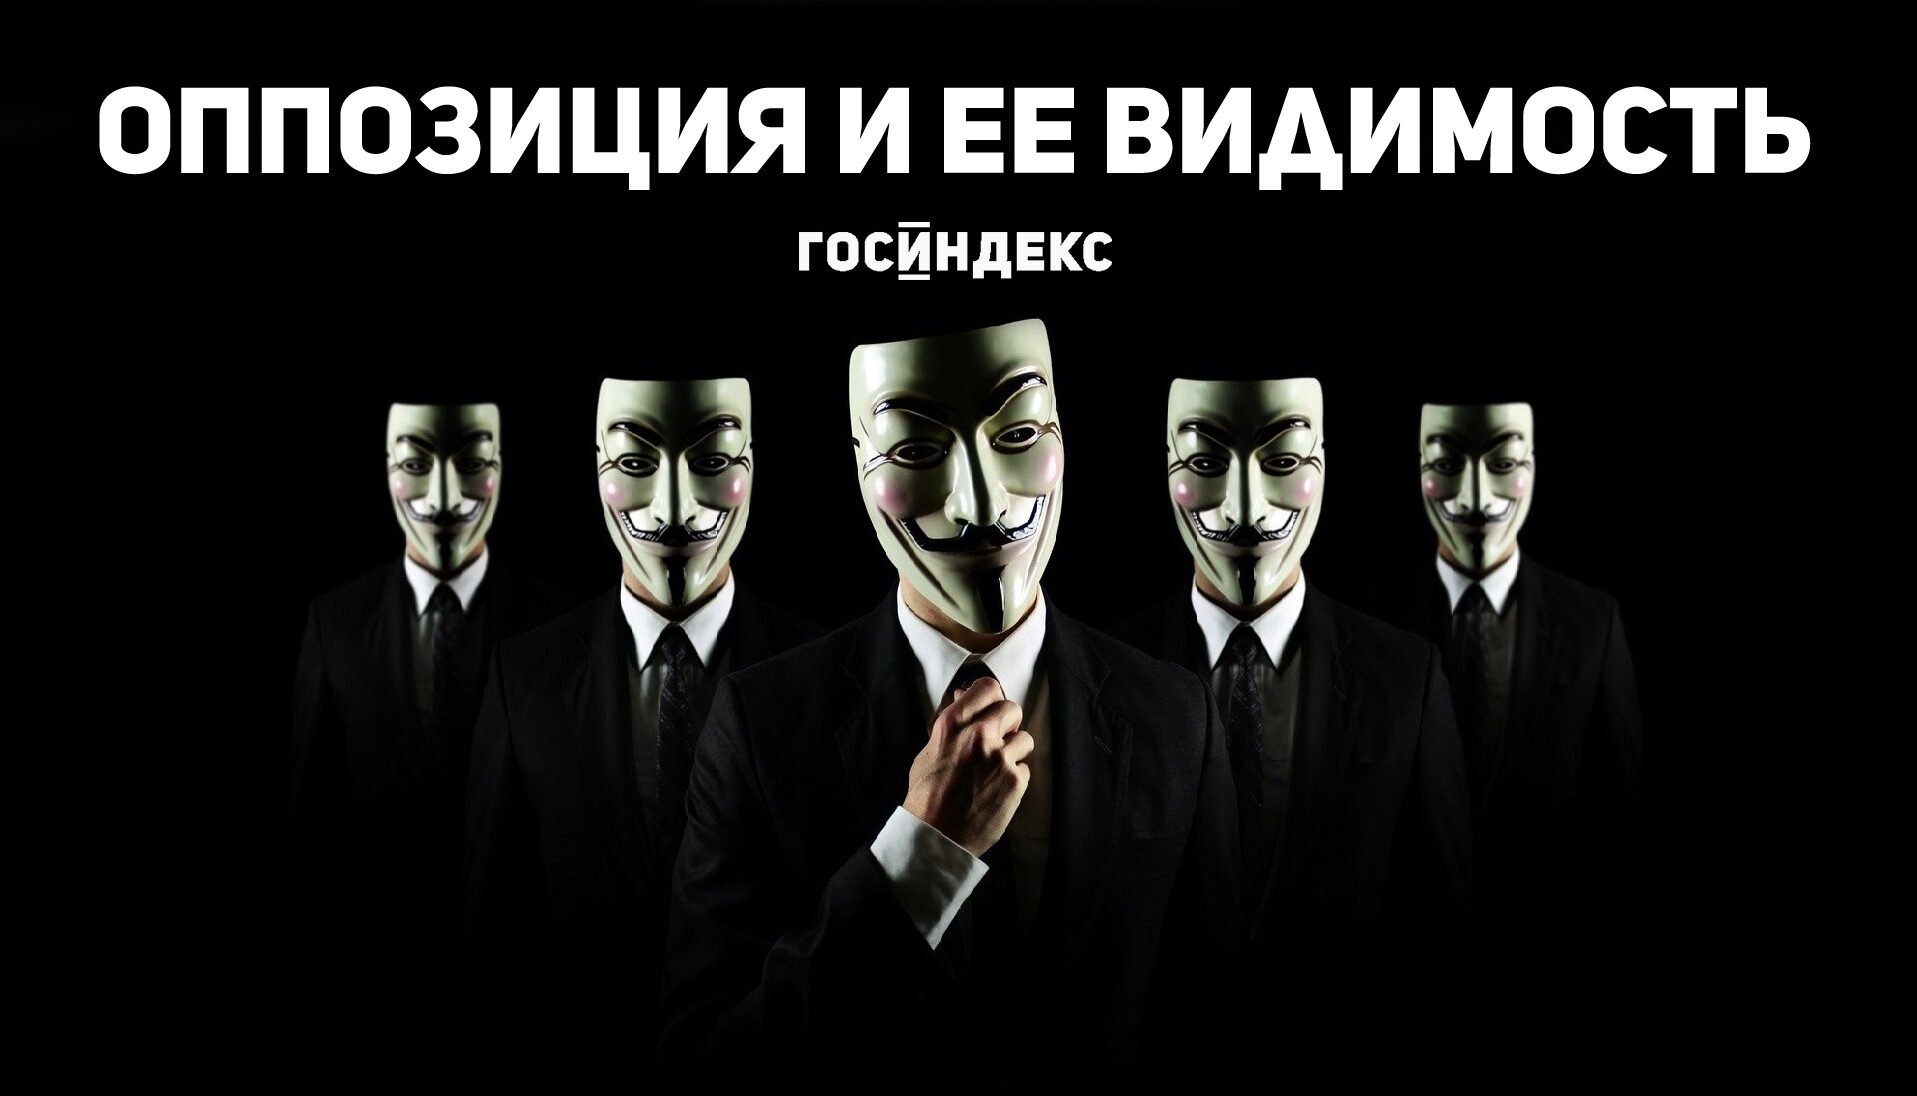 hackers-robaron-24-millones-a-atm-kopiya-6707606